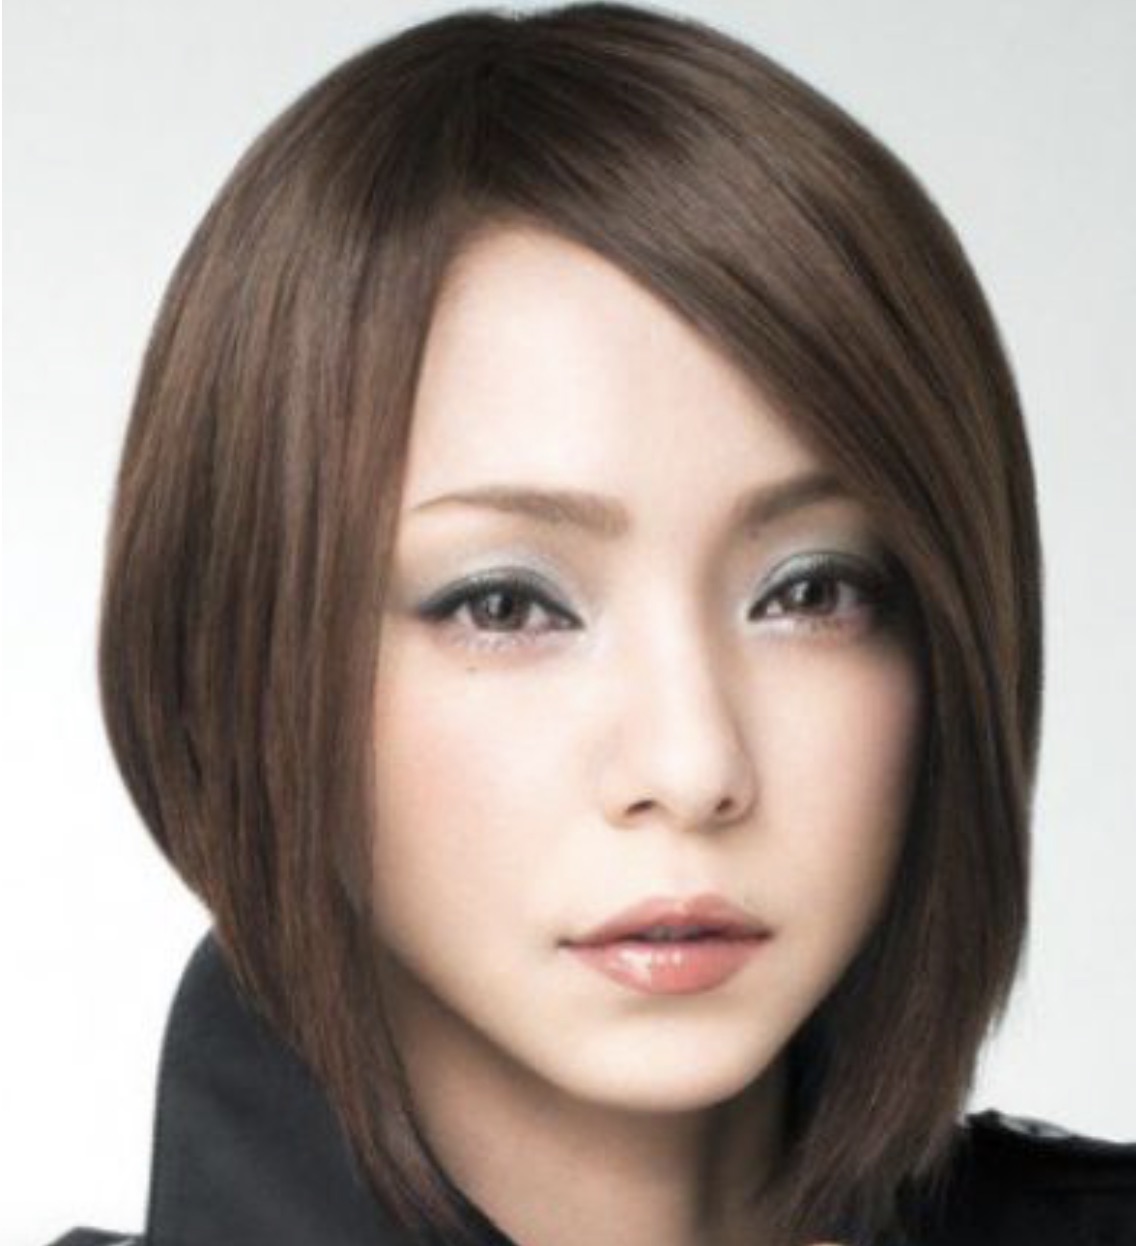 安室奈美恵の現在 ボブの髪型で現在の住まいの大本命は渋谷 ウマ男によるメディアサイト